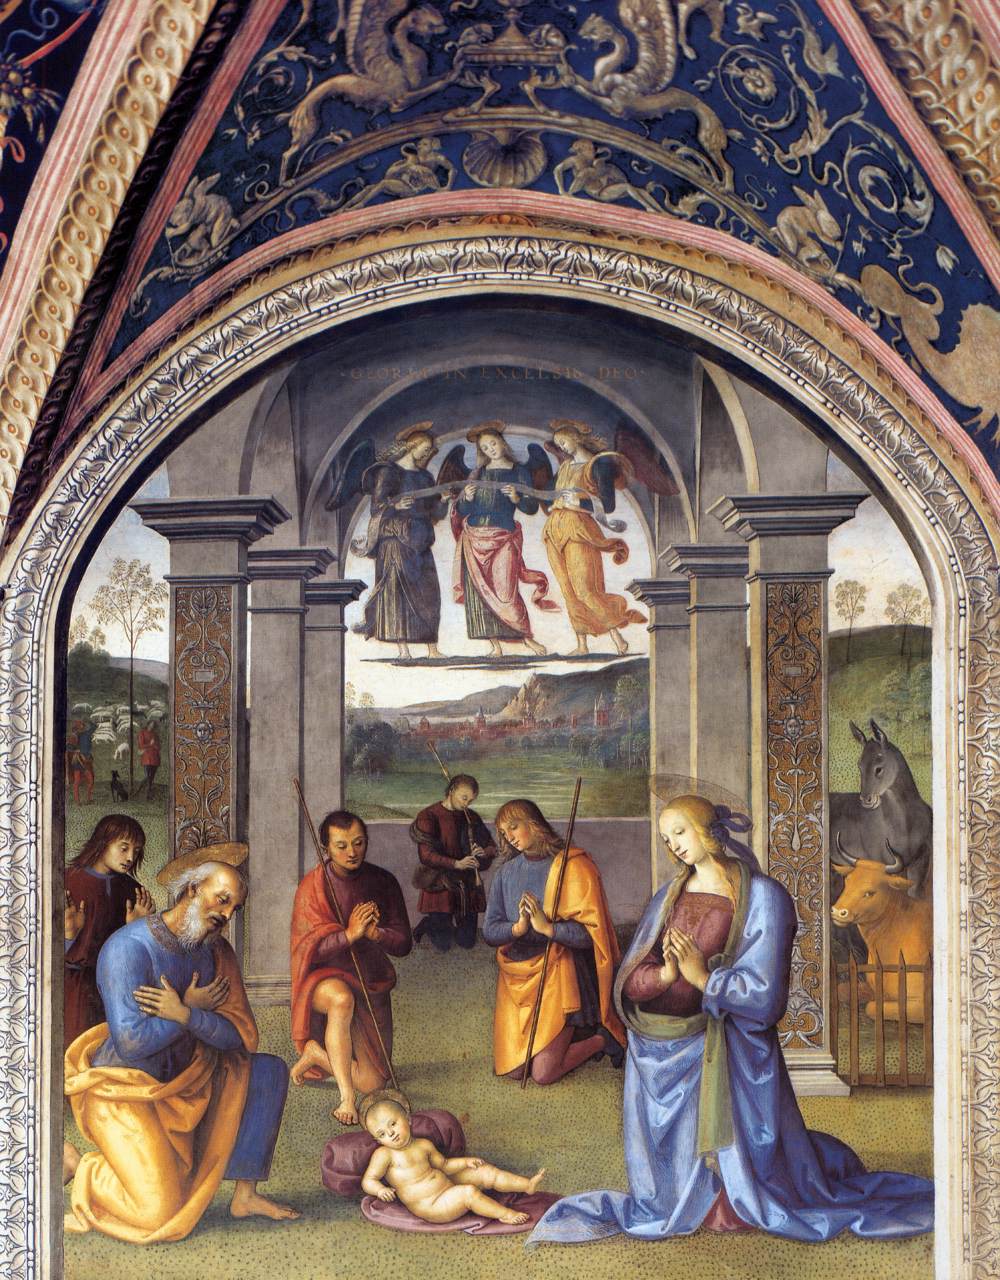 Perugino, Nativity (1498-1500; fresco; Perugia, Nobile Collegio del Cambio, Sala dell'Udienza)